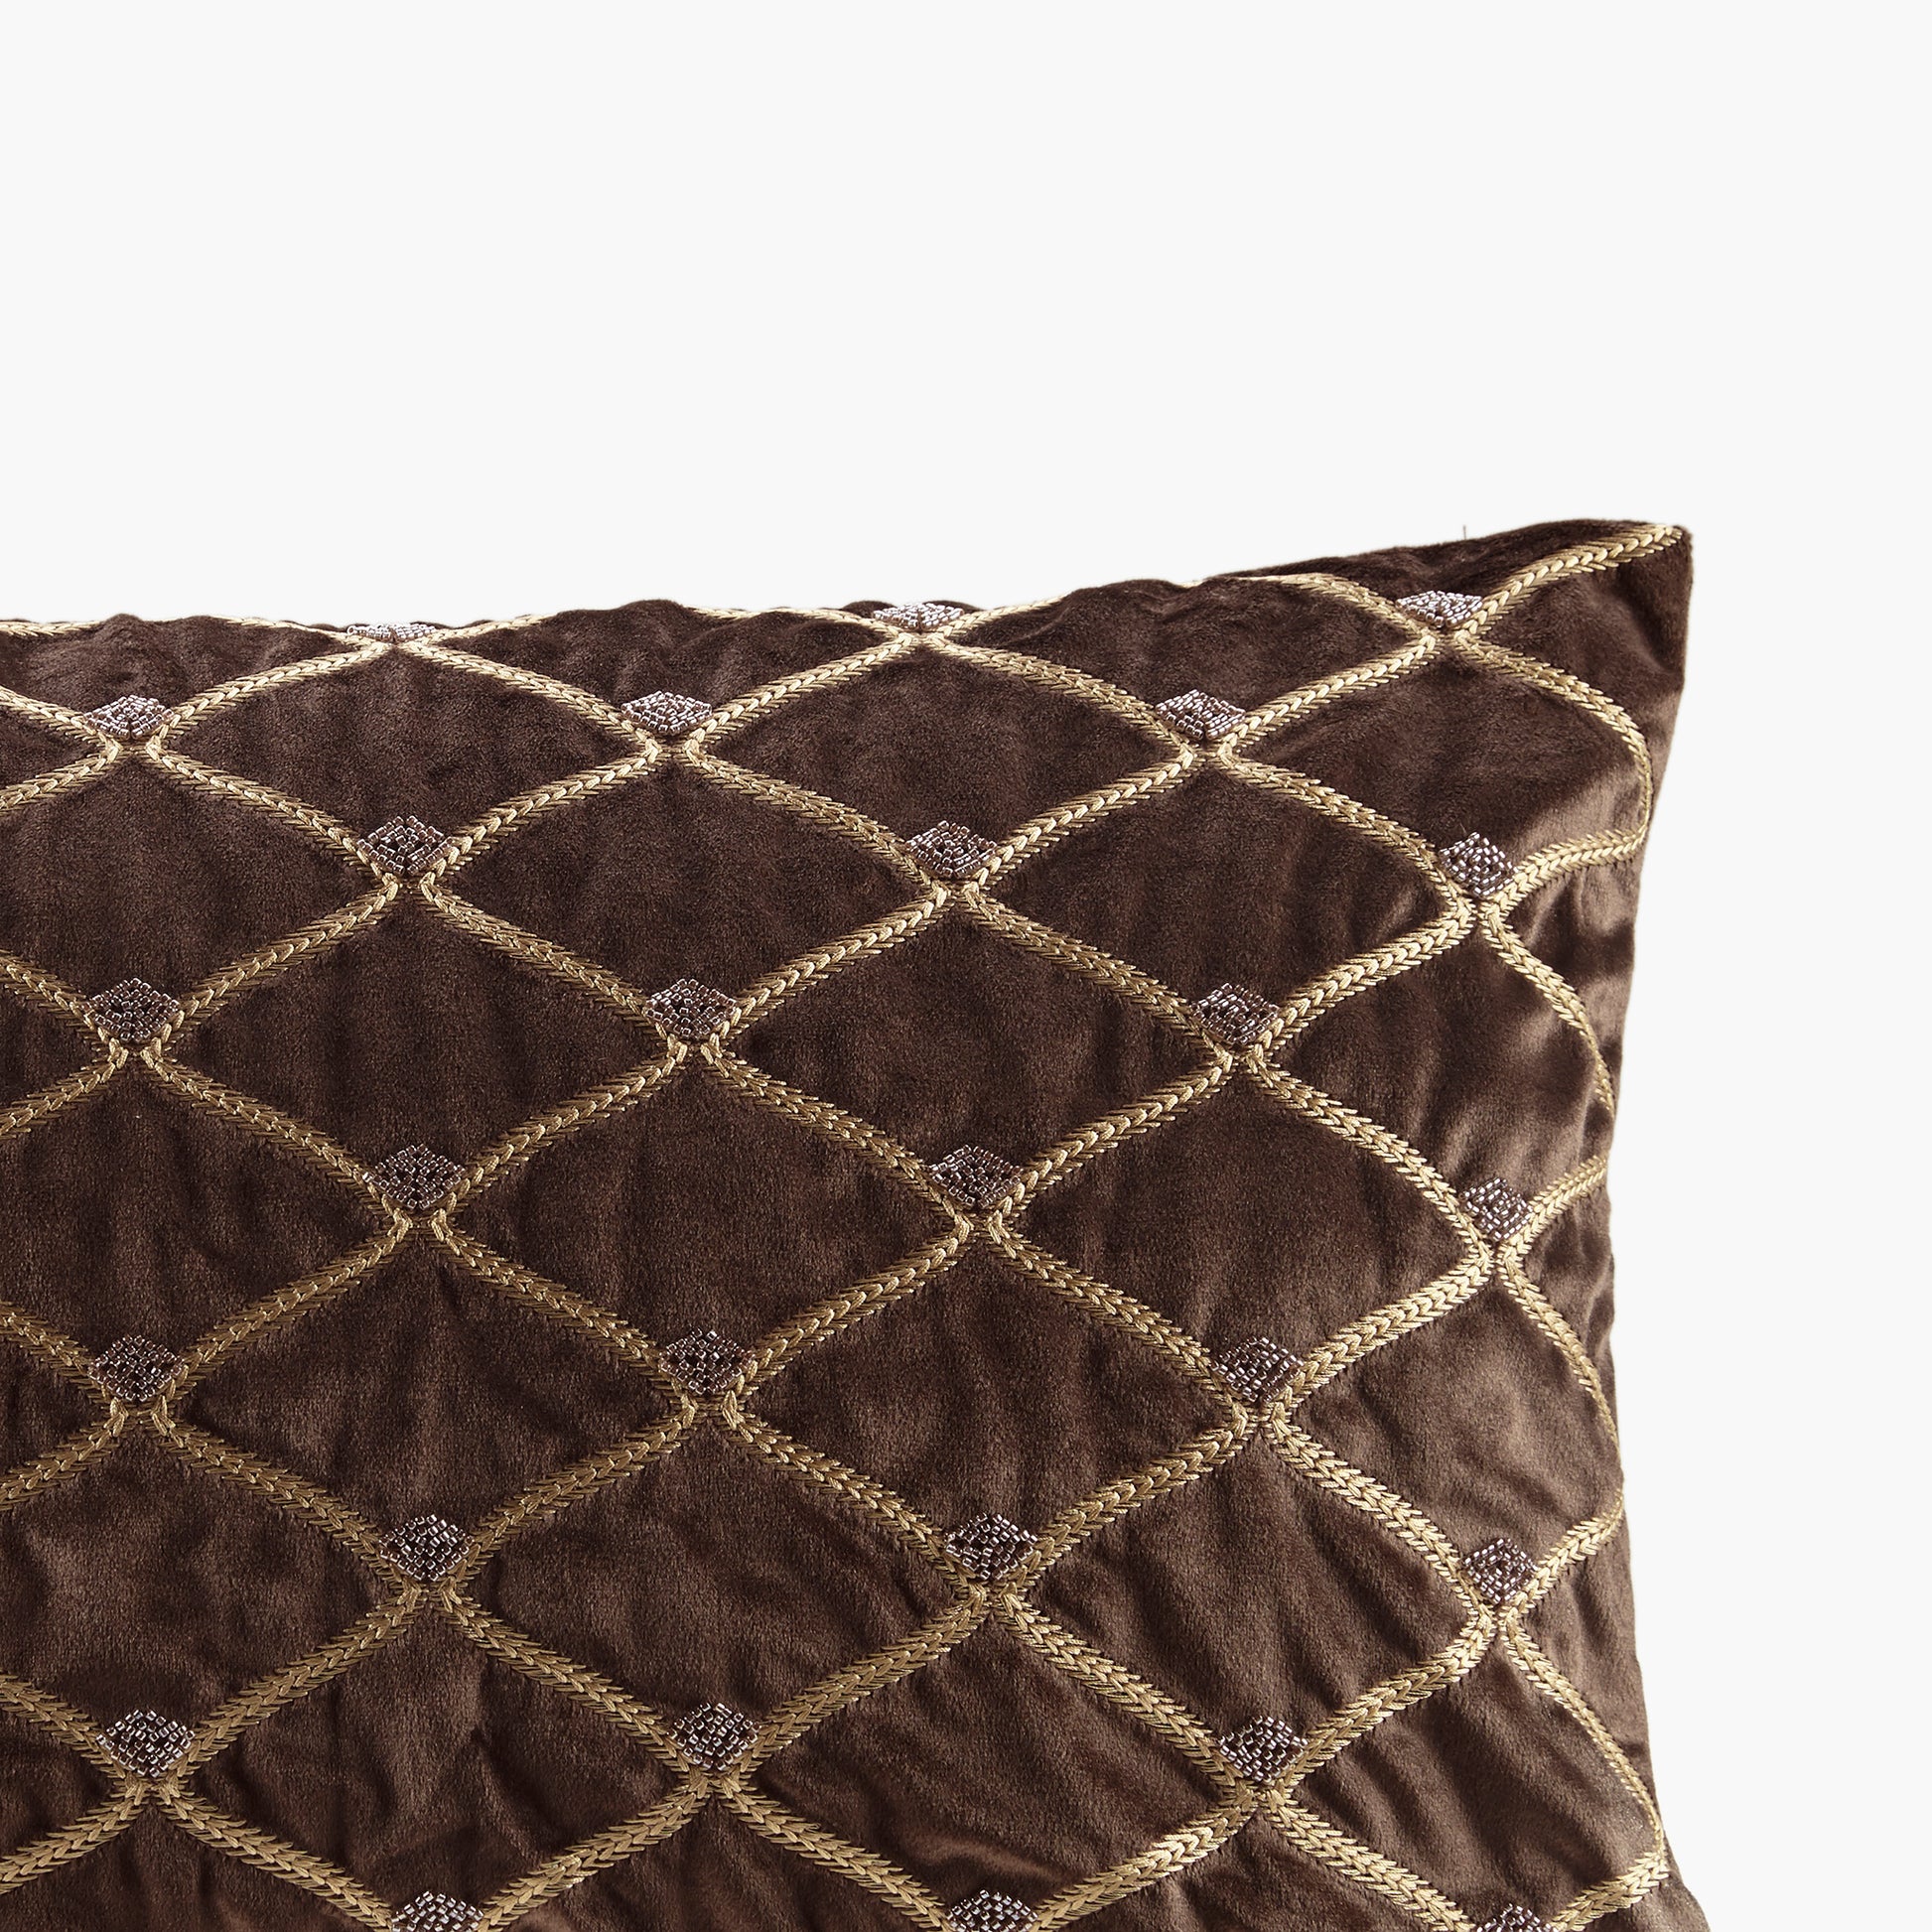 Croscill Decorative Pillows - Oblong & Square Bedding Decor Pillows –  Croscill Online Store